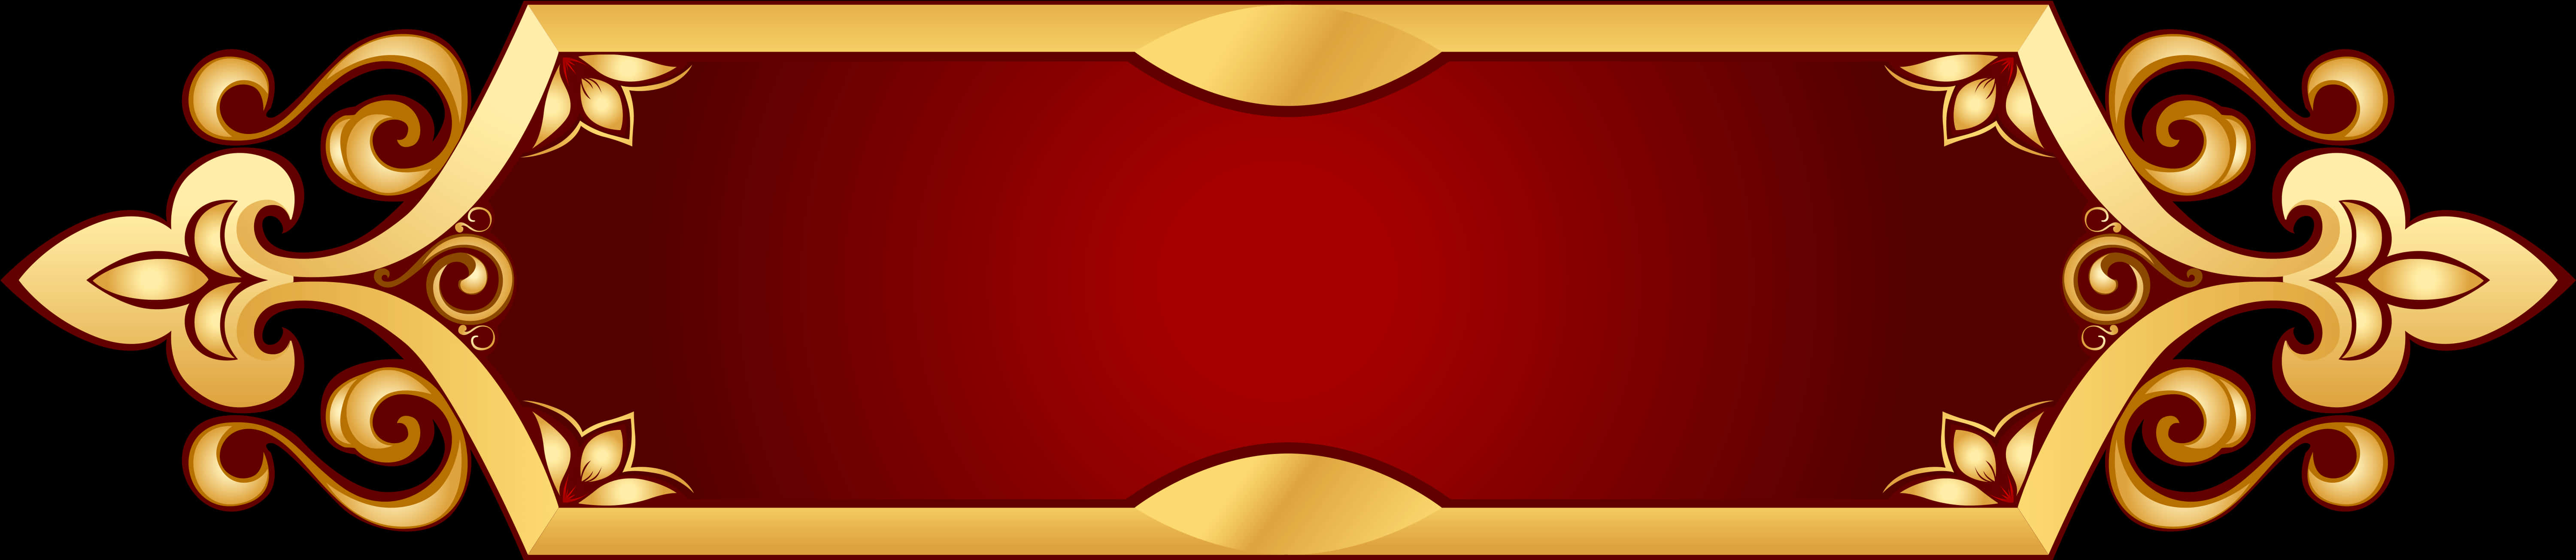 Elegant Redand Gold Banner Design PNG image